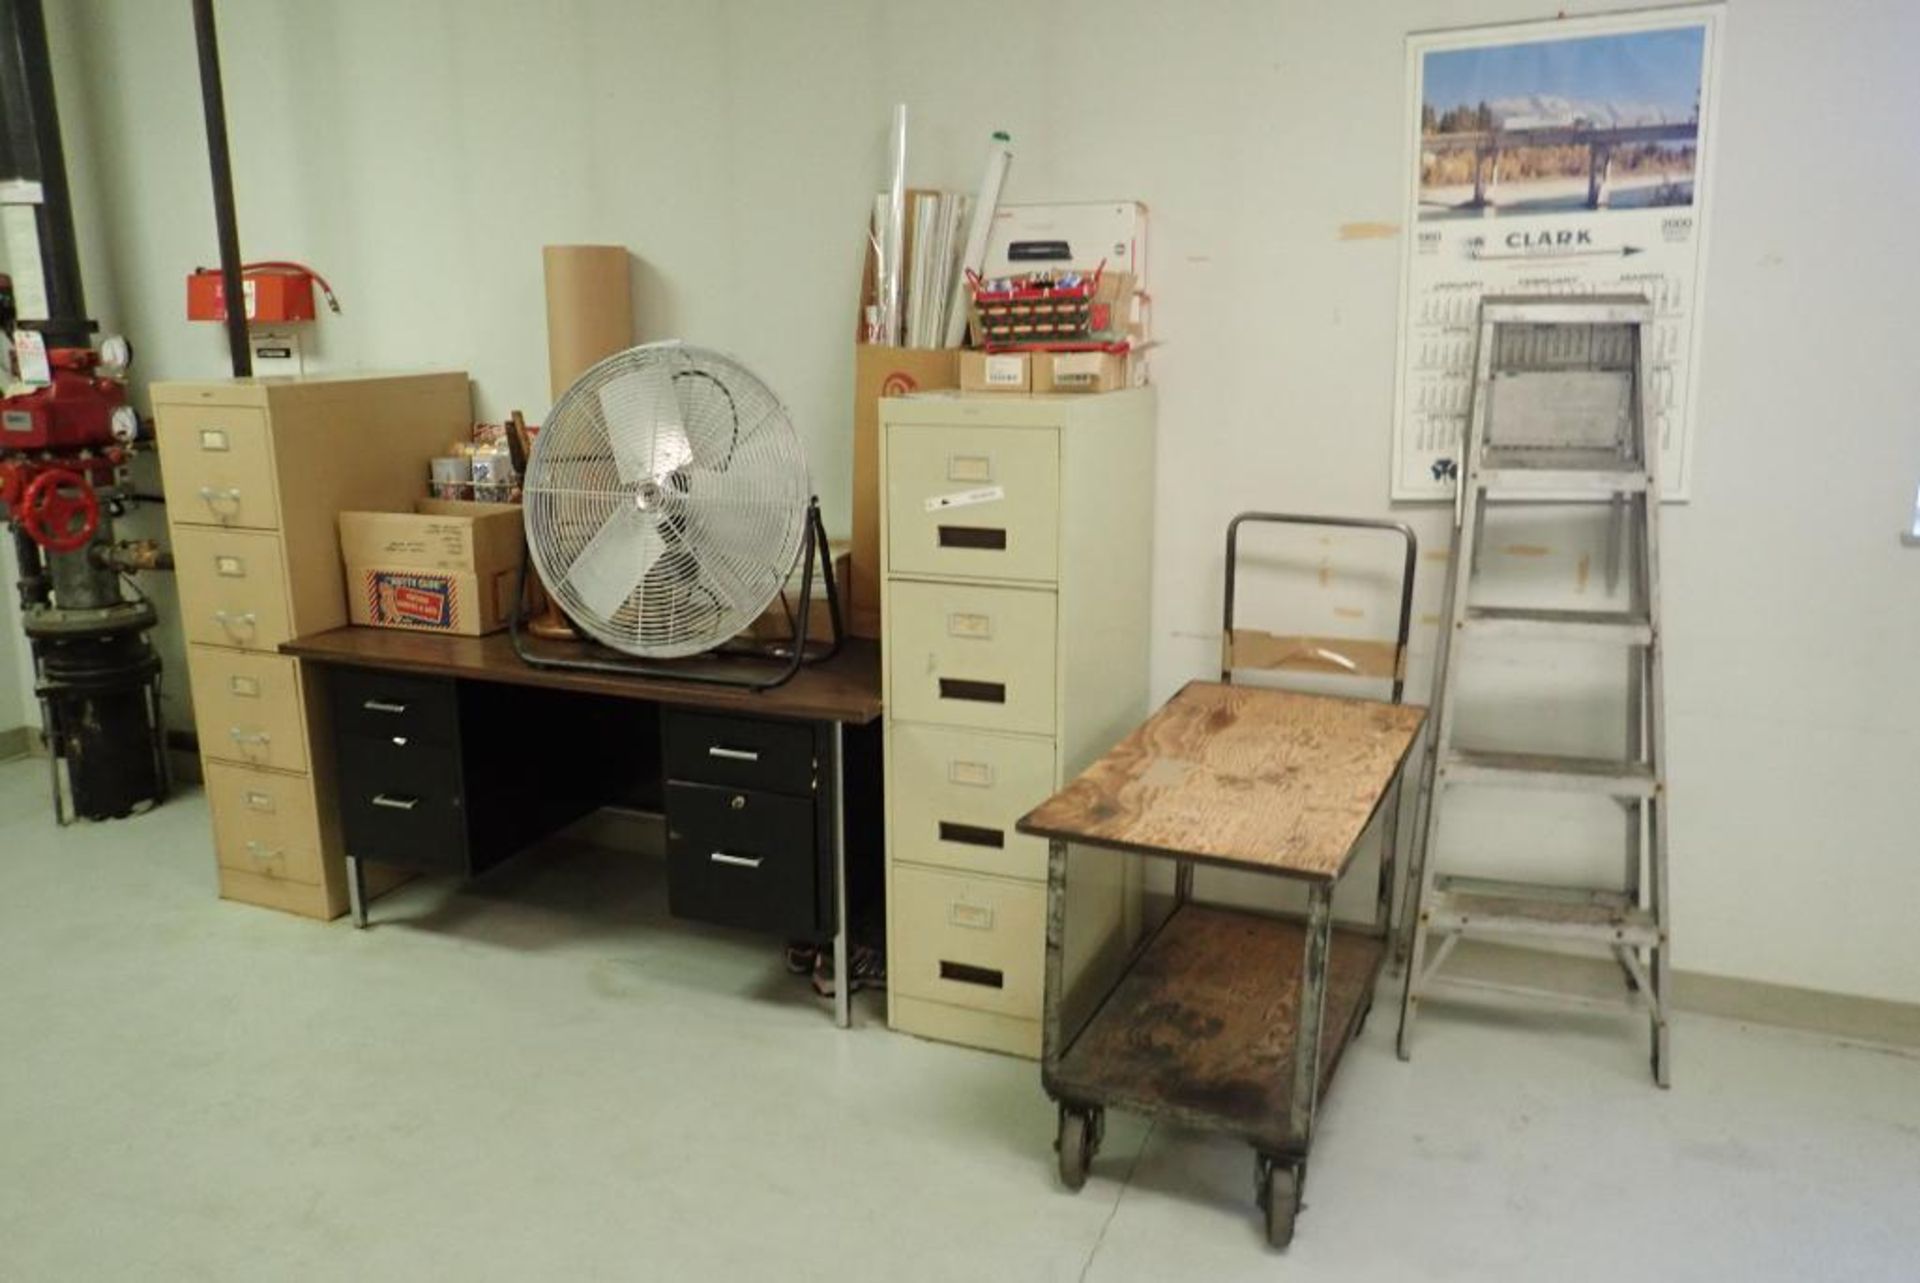 Lot of Desk, (2) File Cabinets, Cart, Fan, Aluminum Step Ladder, etc.